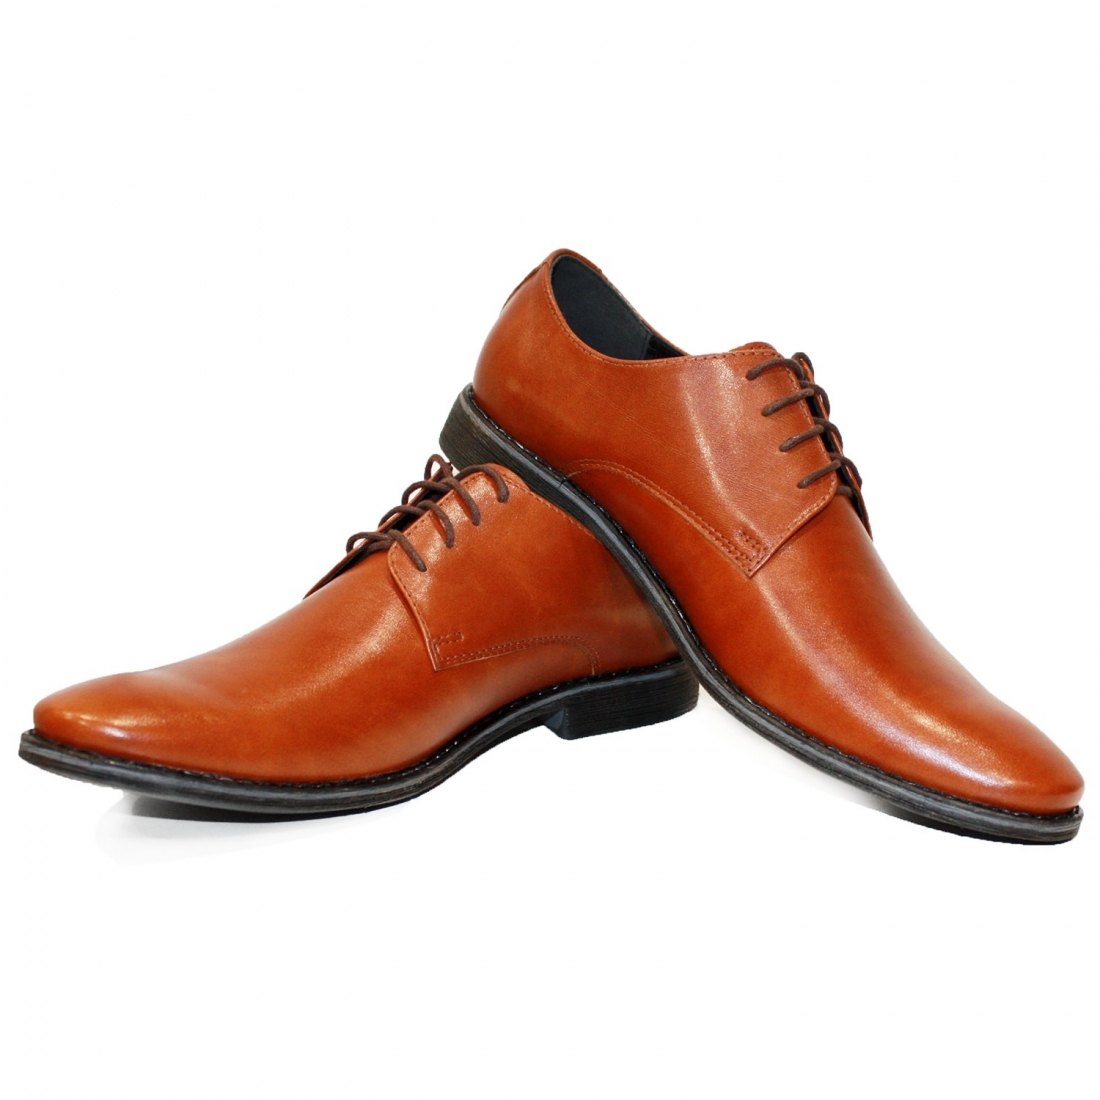 Modello Kosello - Scarpe Classiche - Handmade Colorful Italian Leather Shoes